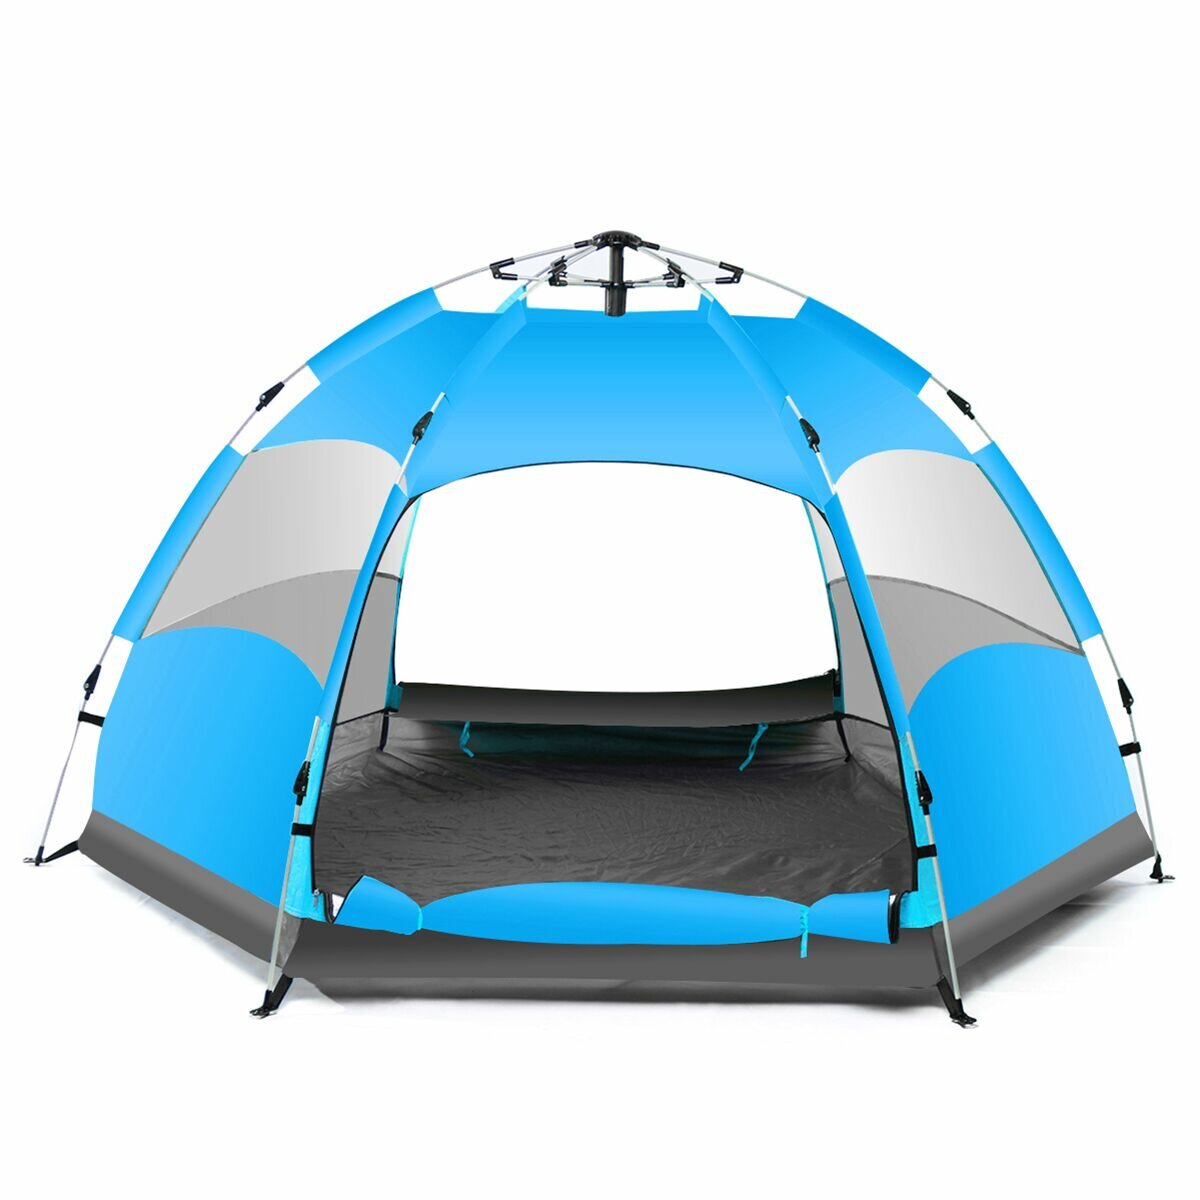 IPRee® Tente de camping automatique imperméable pour 5-7 personnes, grande, pour le camping et la randonnée, camp de base extérieur, bleu/orange